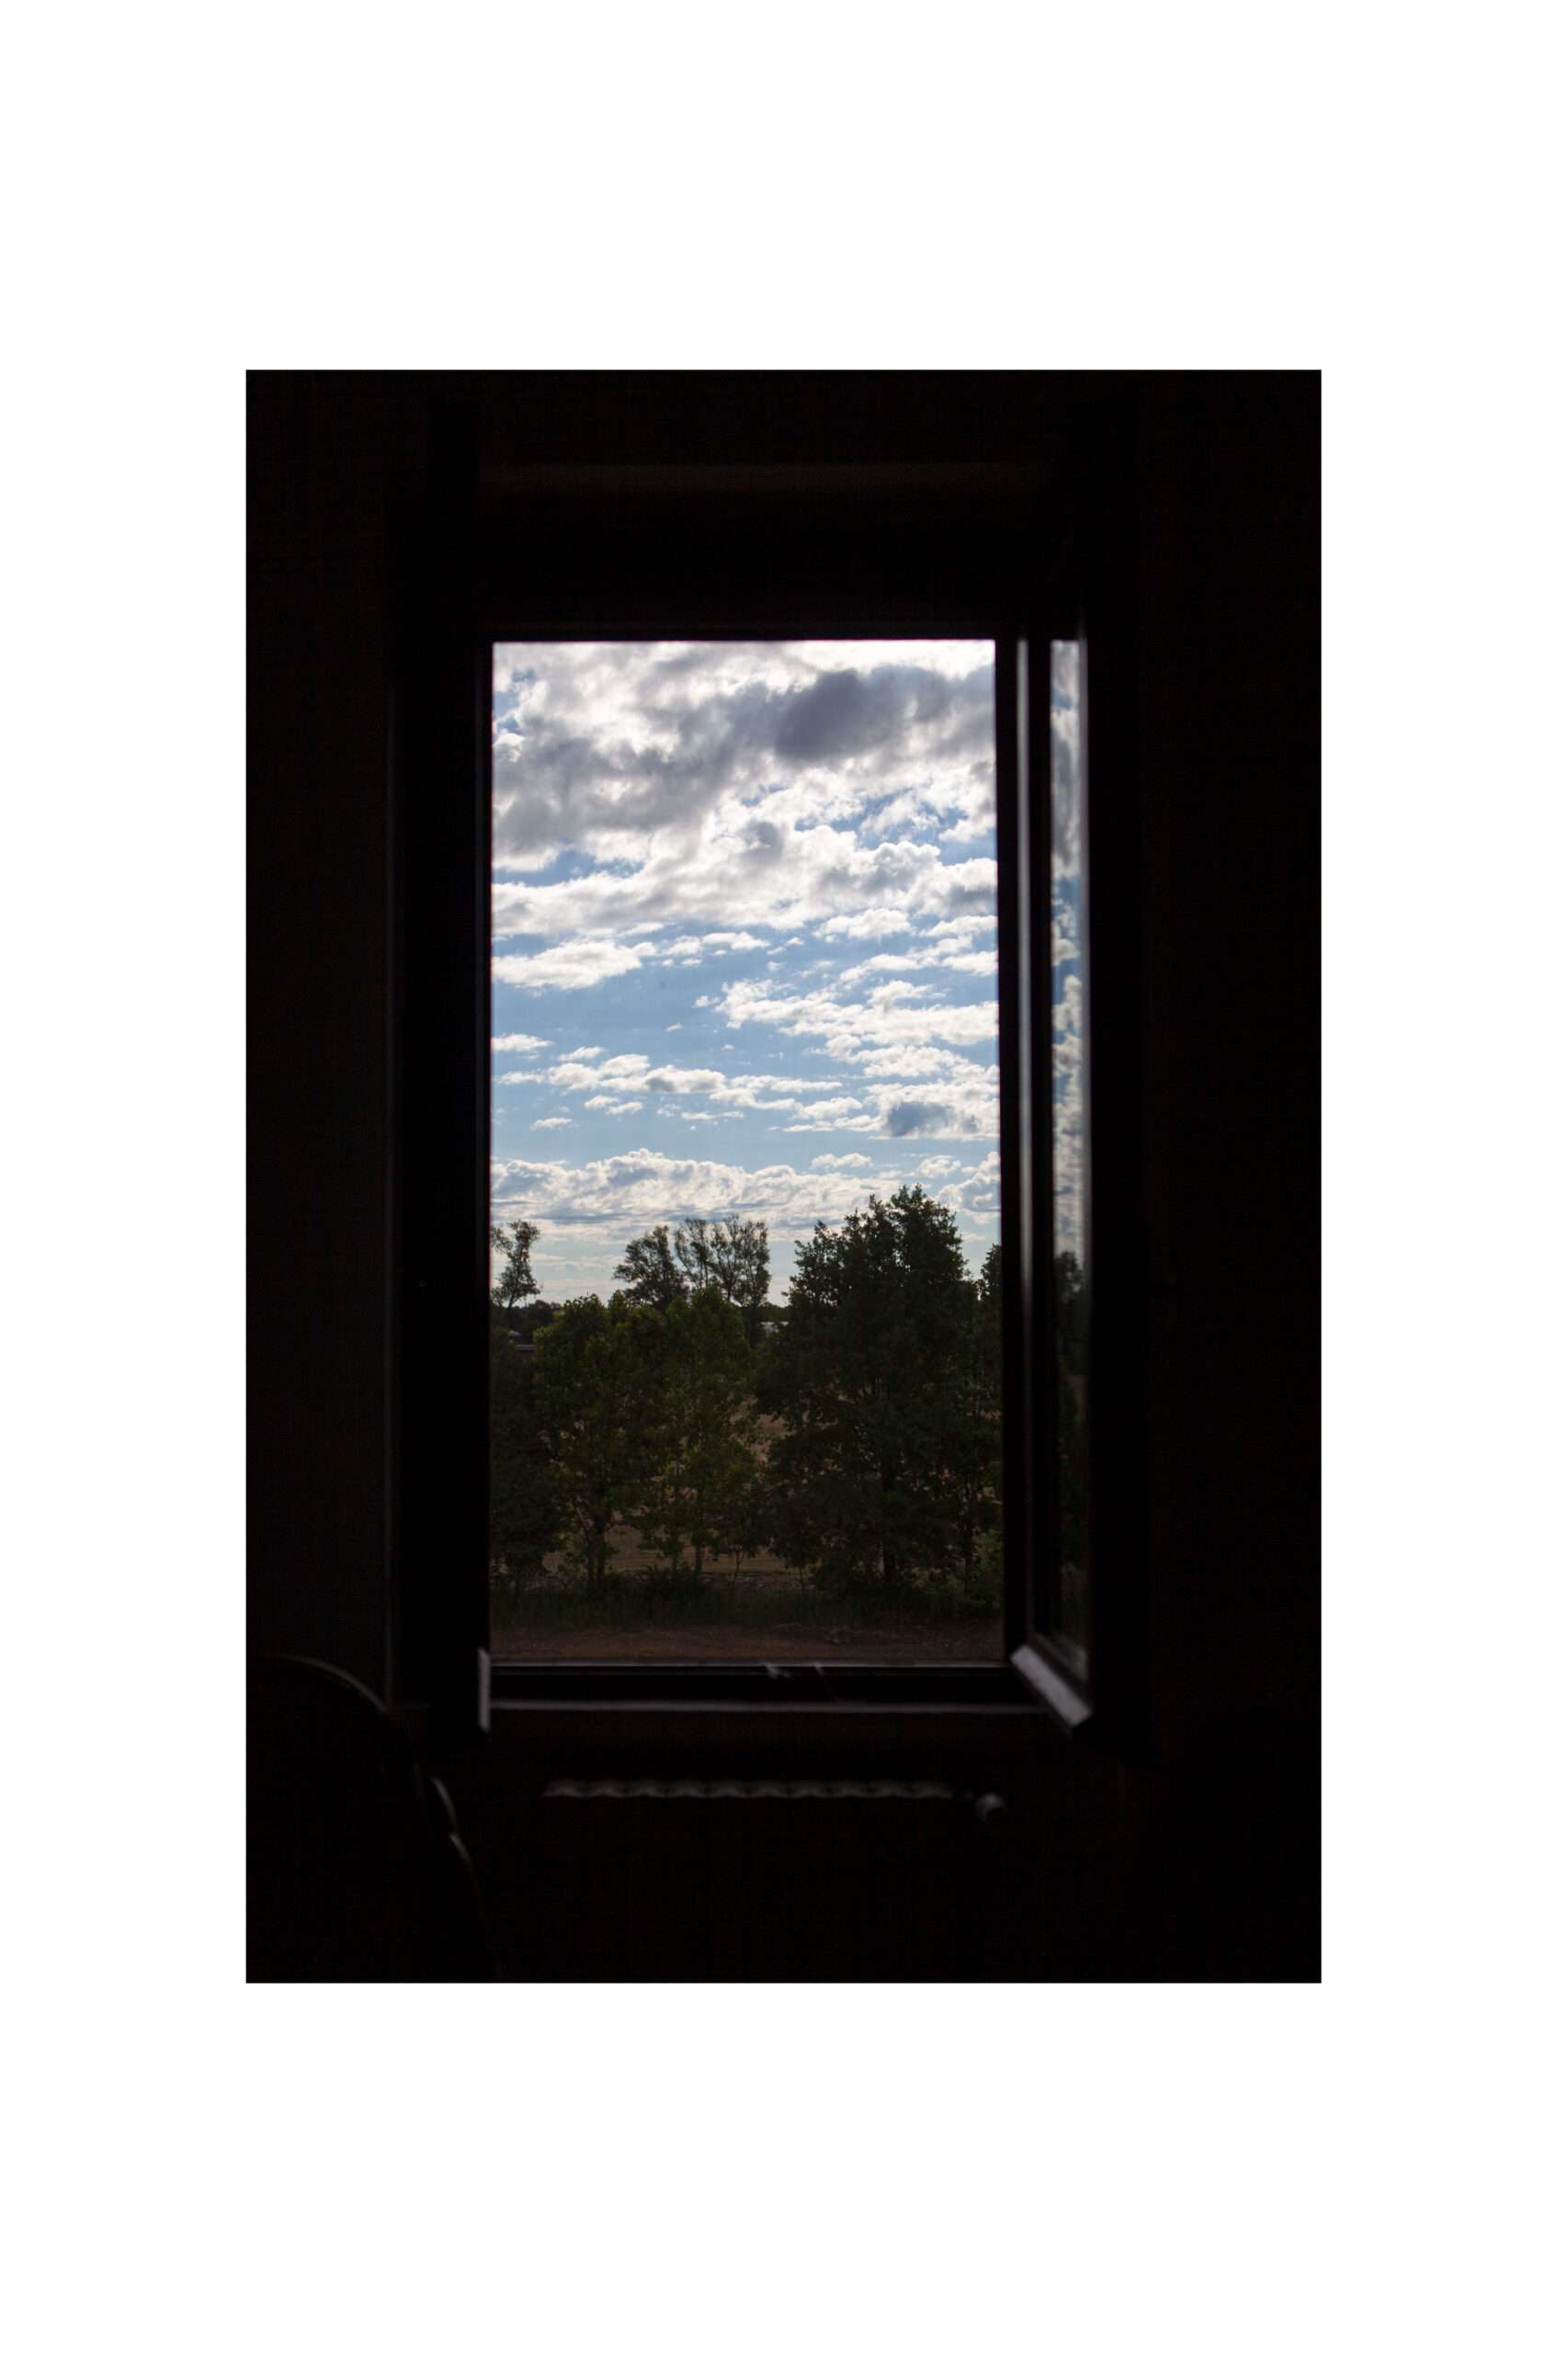 La finestra di Sarah: introduzione al progetto fotografico